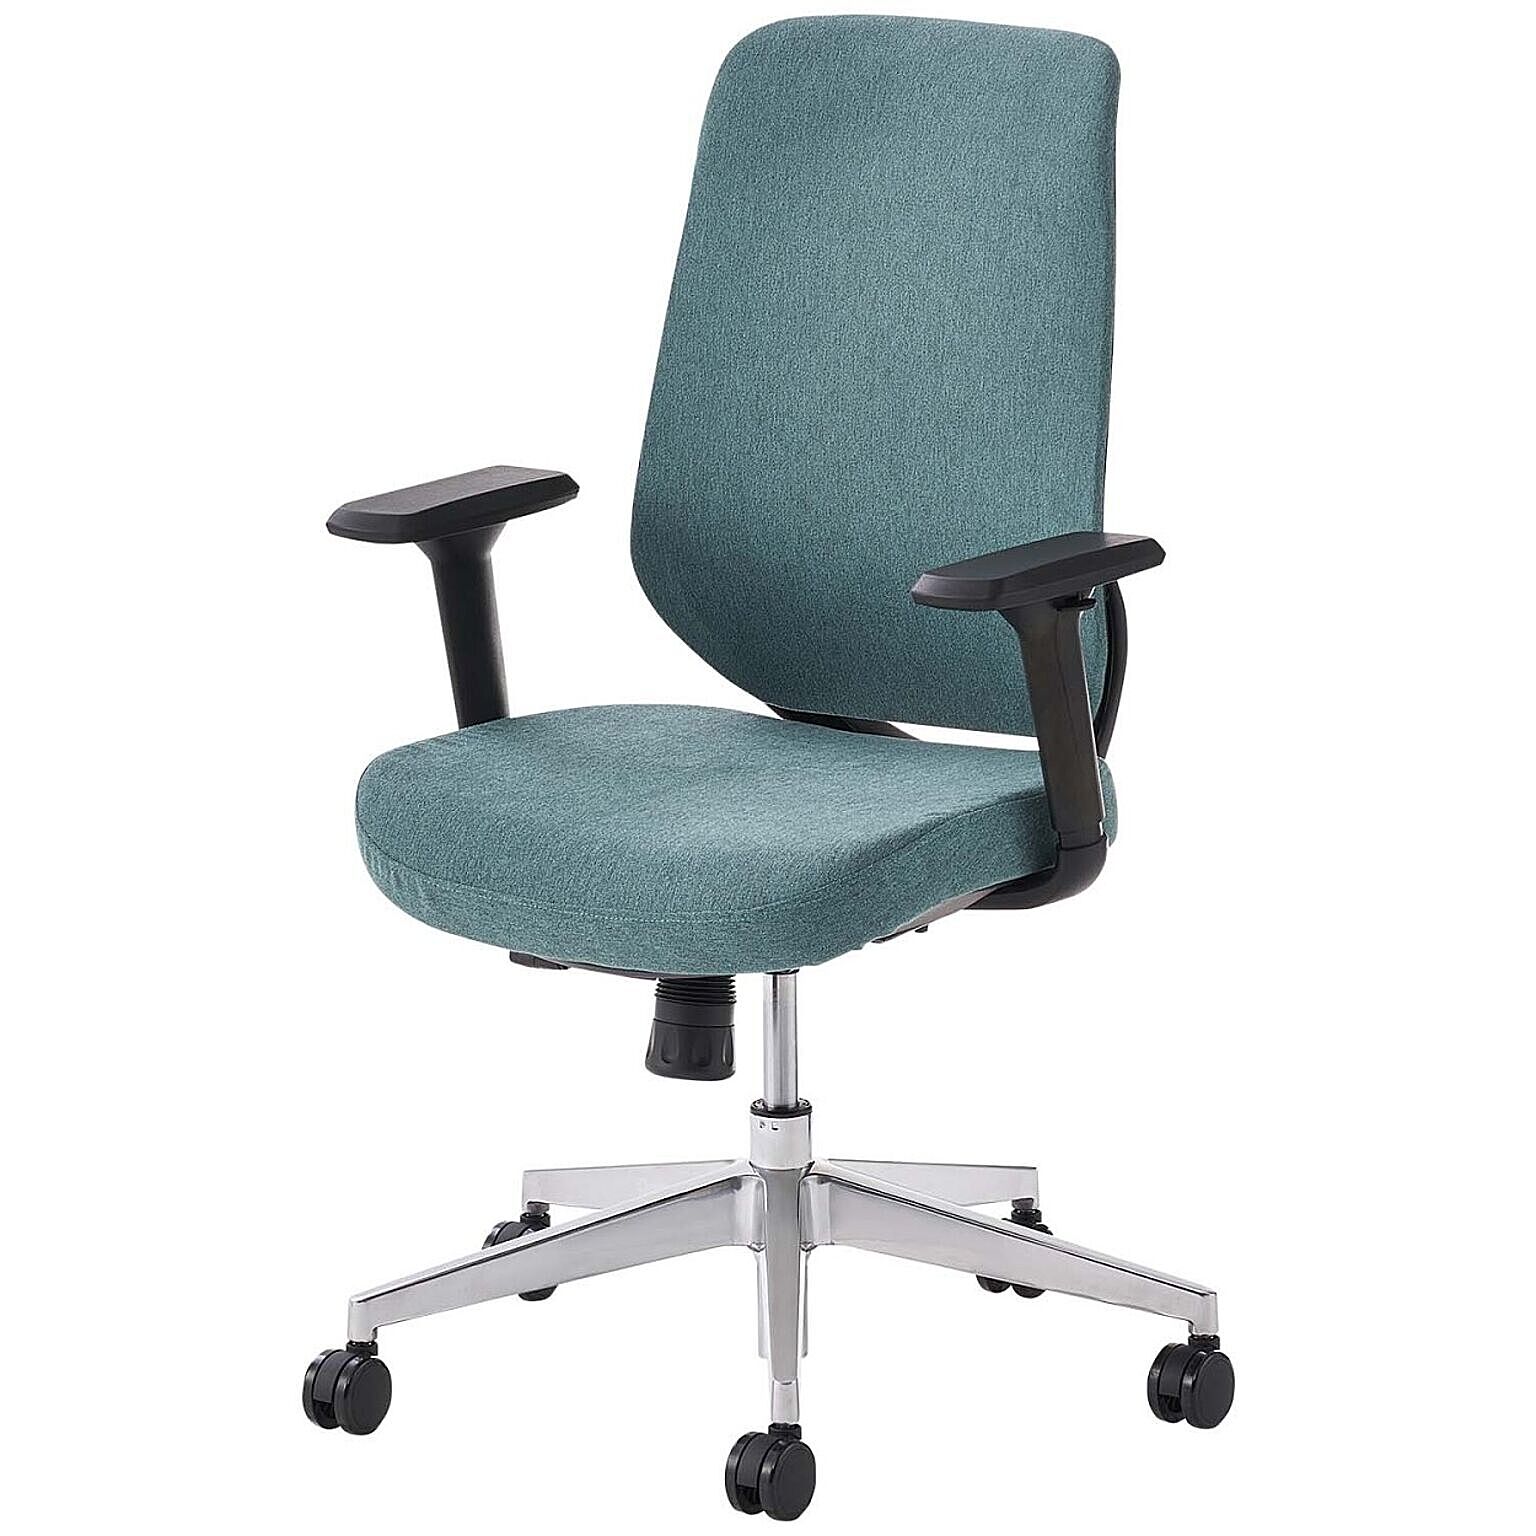 オフィスチェア YS-1 肘付き 可動肘 メッシュチェア/布張りチェア ランバーサポート 人間工学 椅子